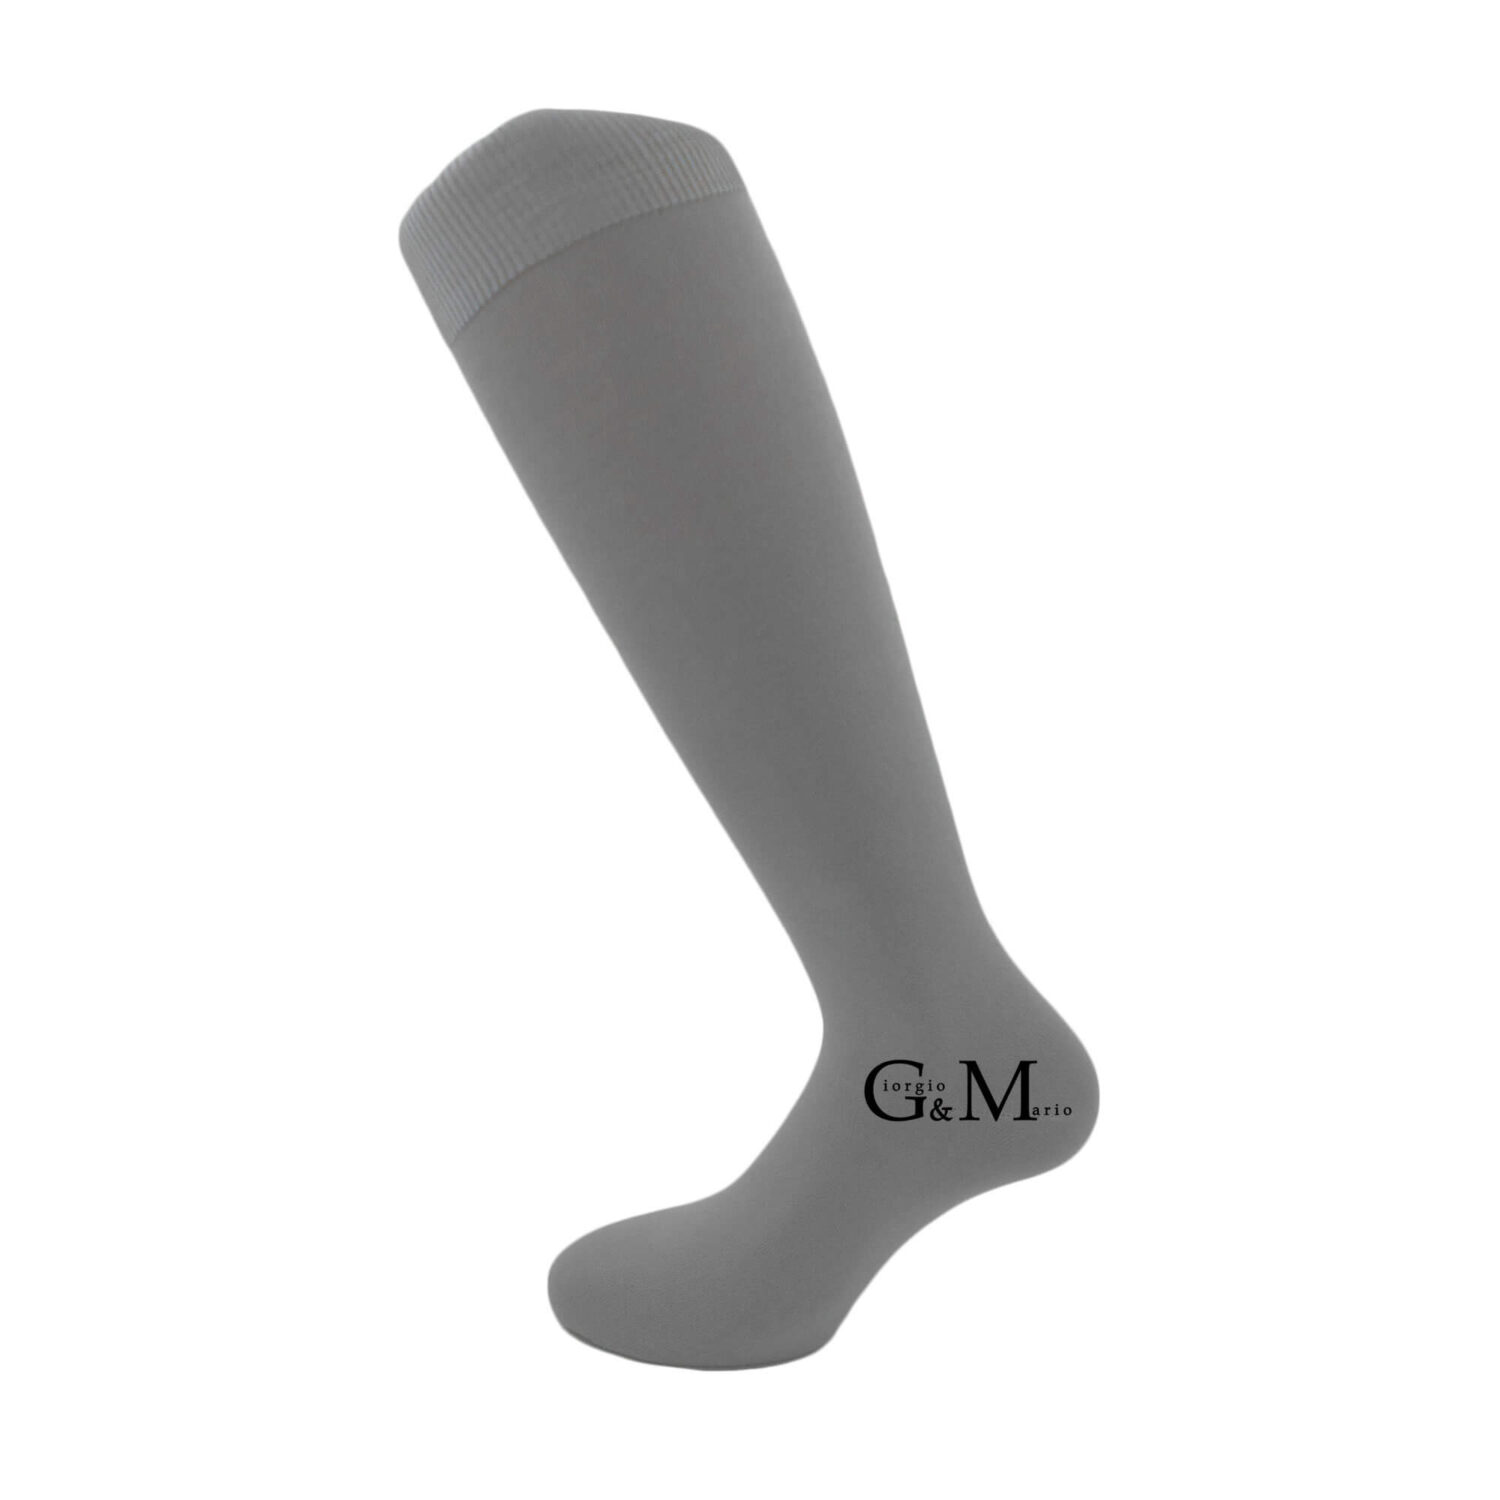 Дамски 3/4 дълги чорапи от памук с подсилени пета и пръсти | G&M Socks | Цвят: светло сиви